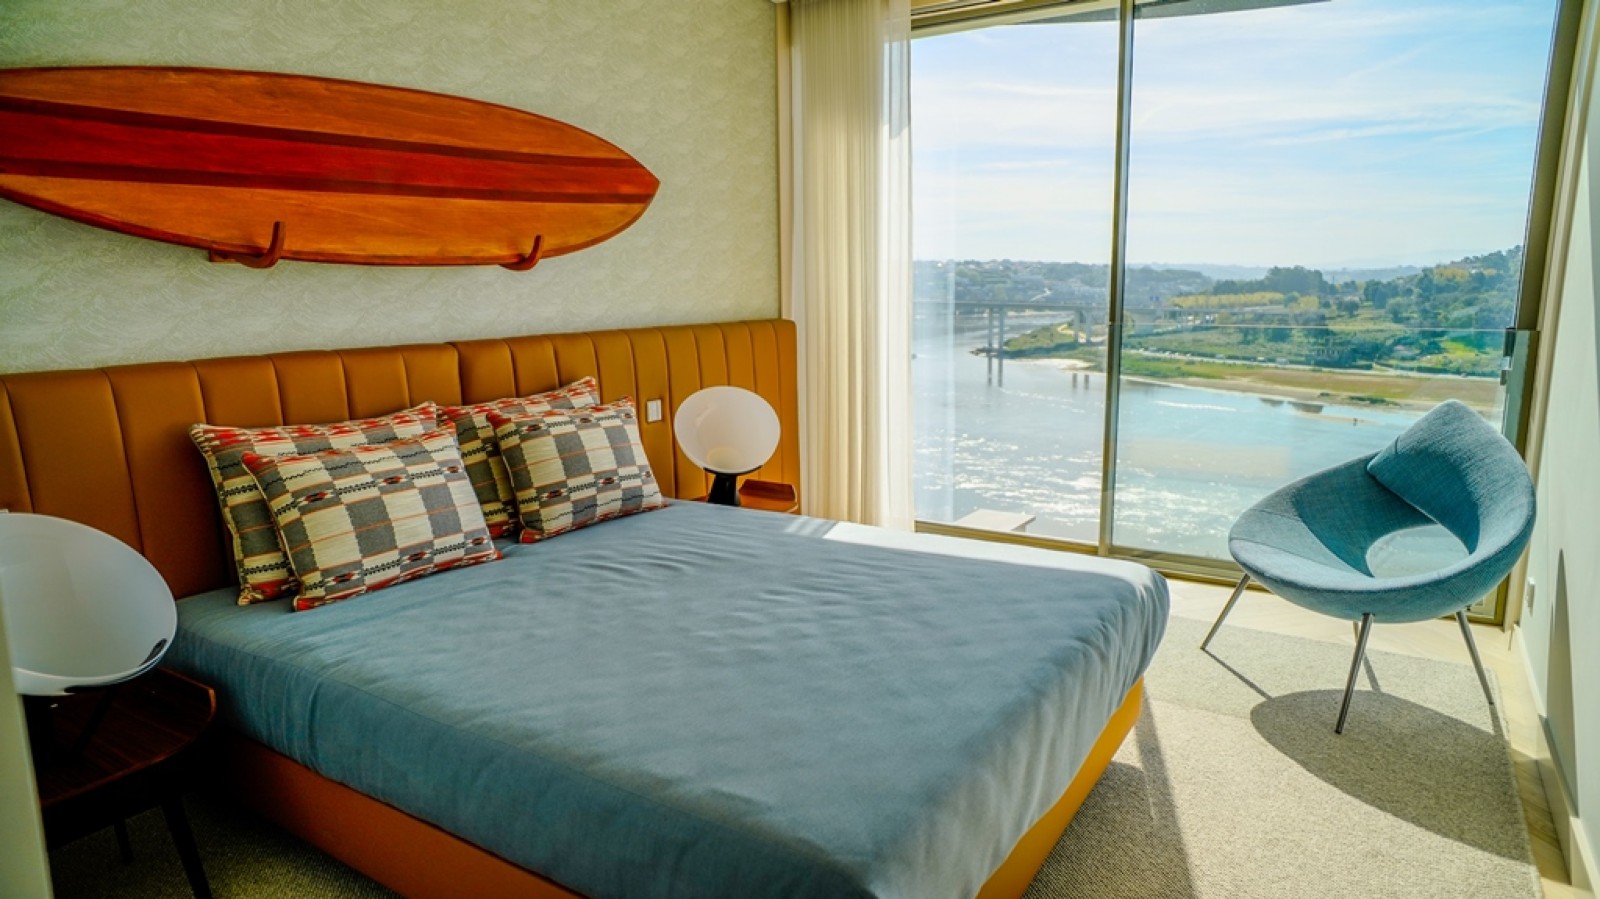 Apartamento T3+1 Duplex com vista de rio, para venda, Porto, Portugal_259564